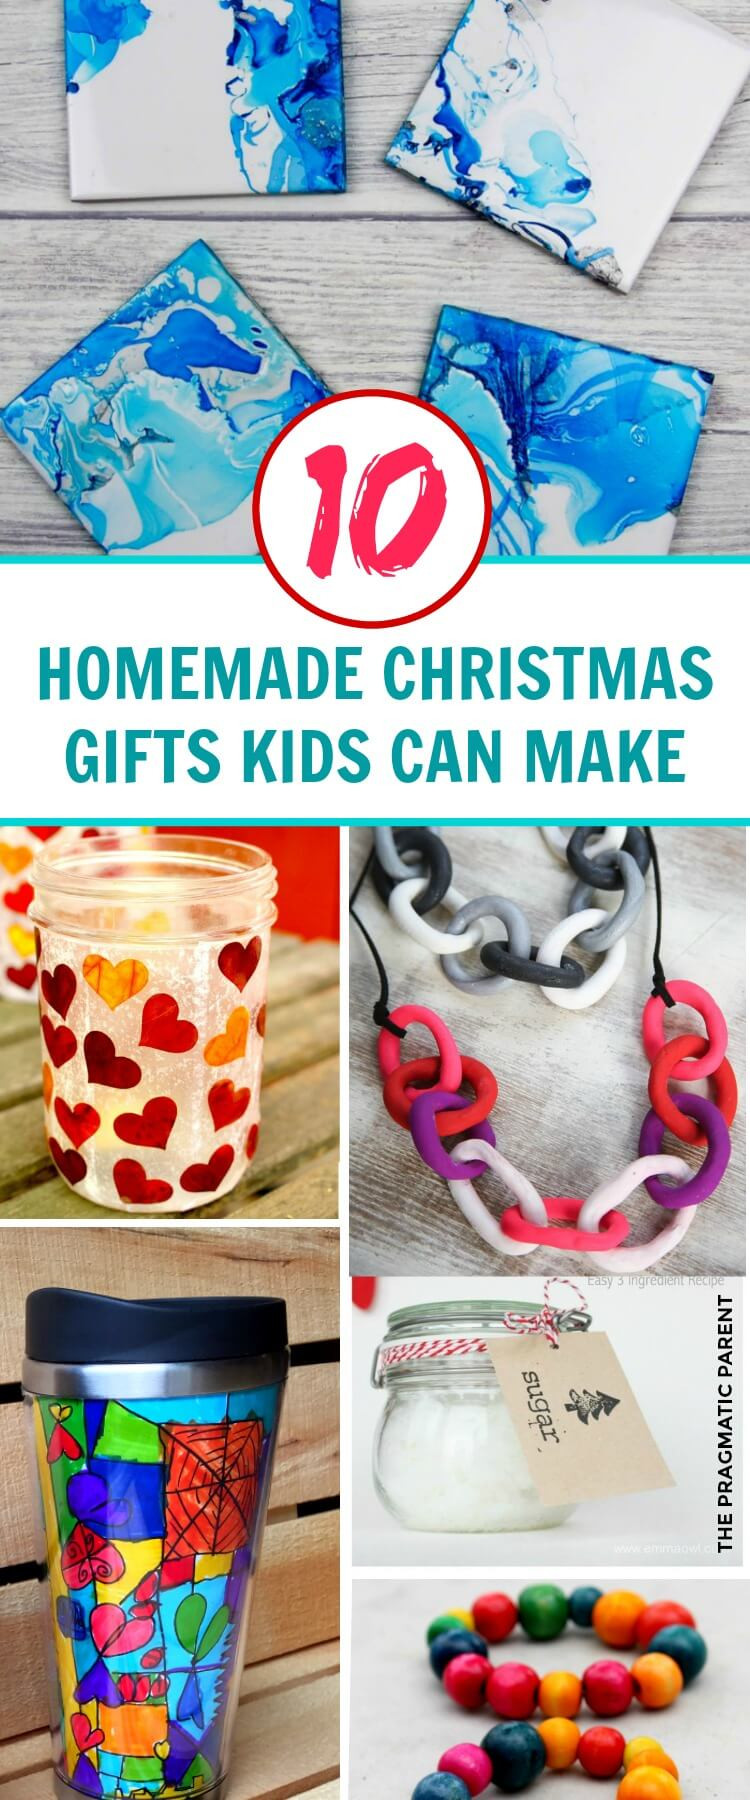 DIY Christmas Gift For Kids
 10 Beautiful Homemade Christmas Gifts Kids Can Make